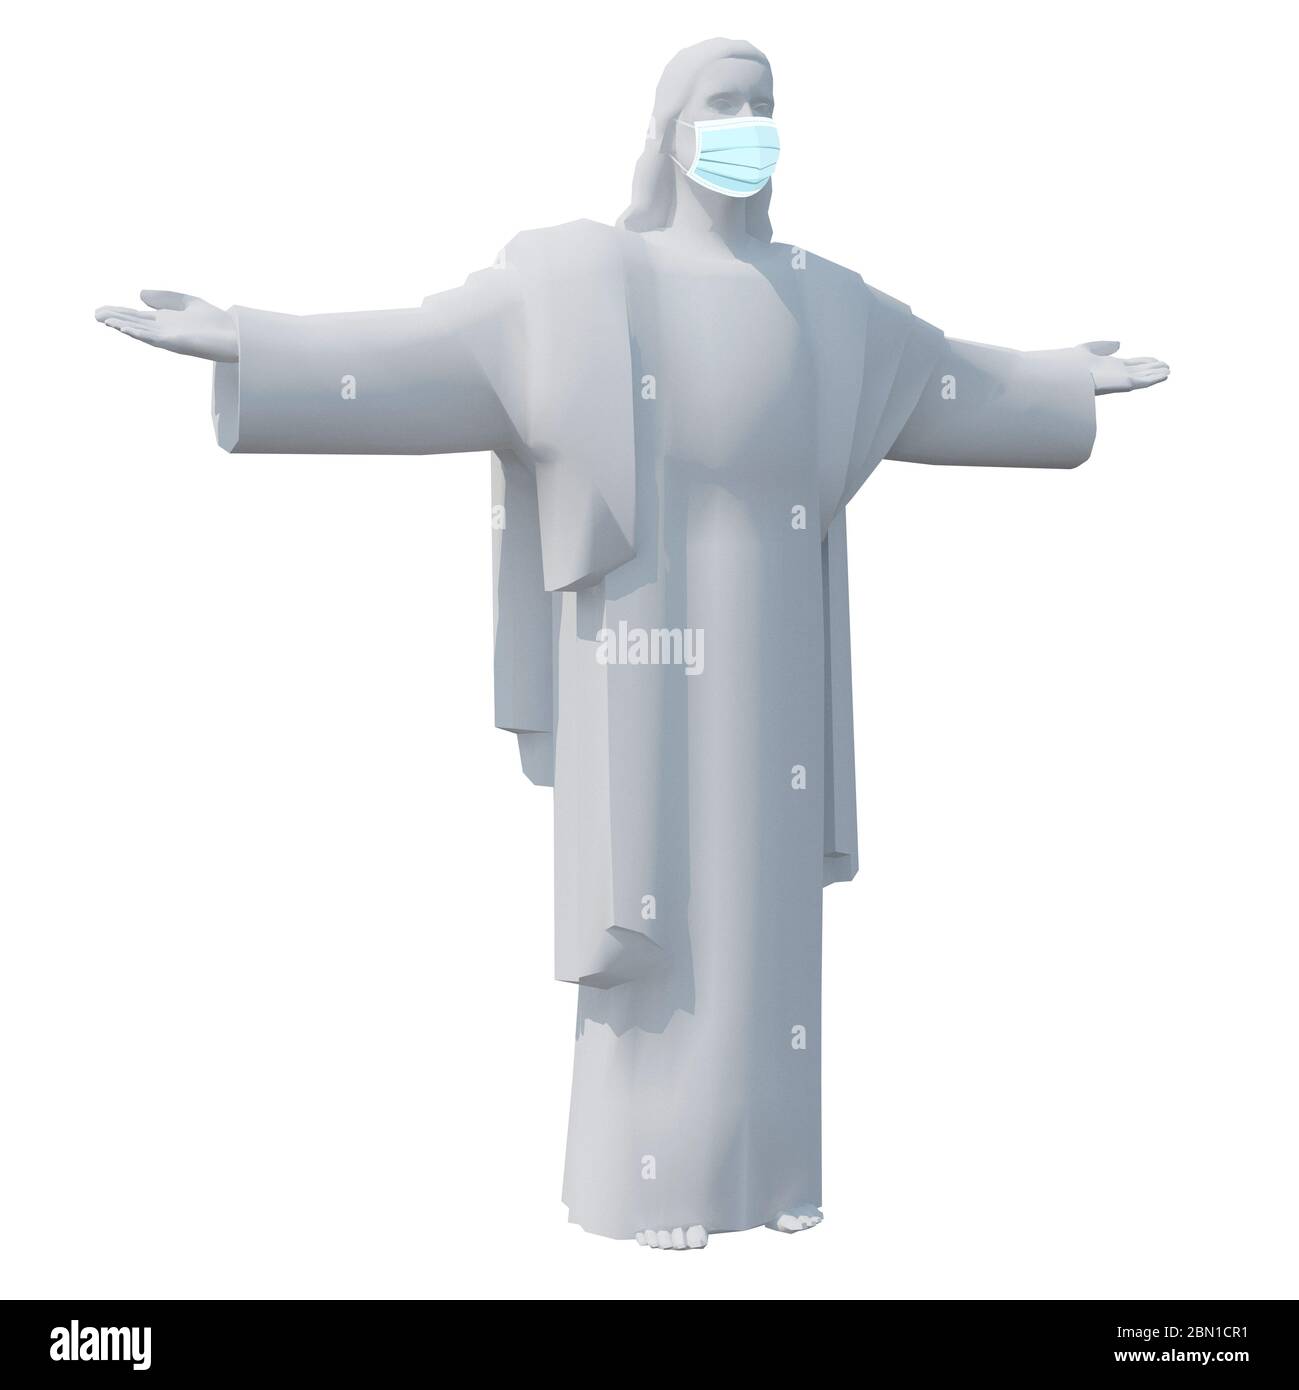 Statue de Jésus avec masque chirurgical, illustration 3d Banque D'Images